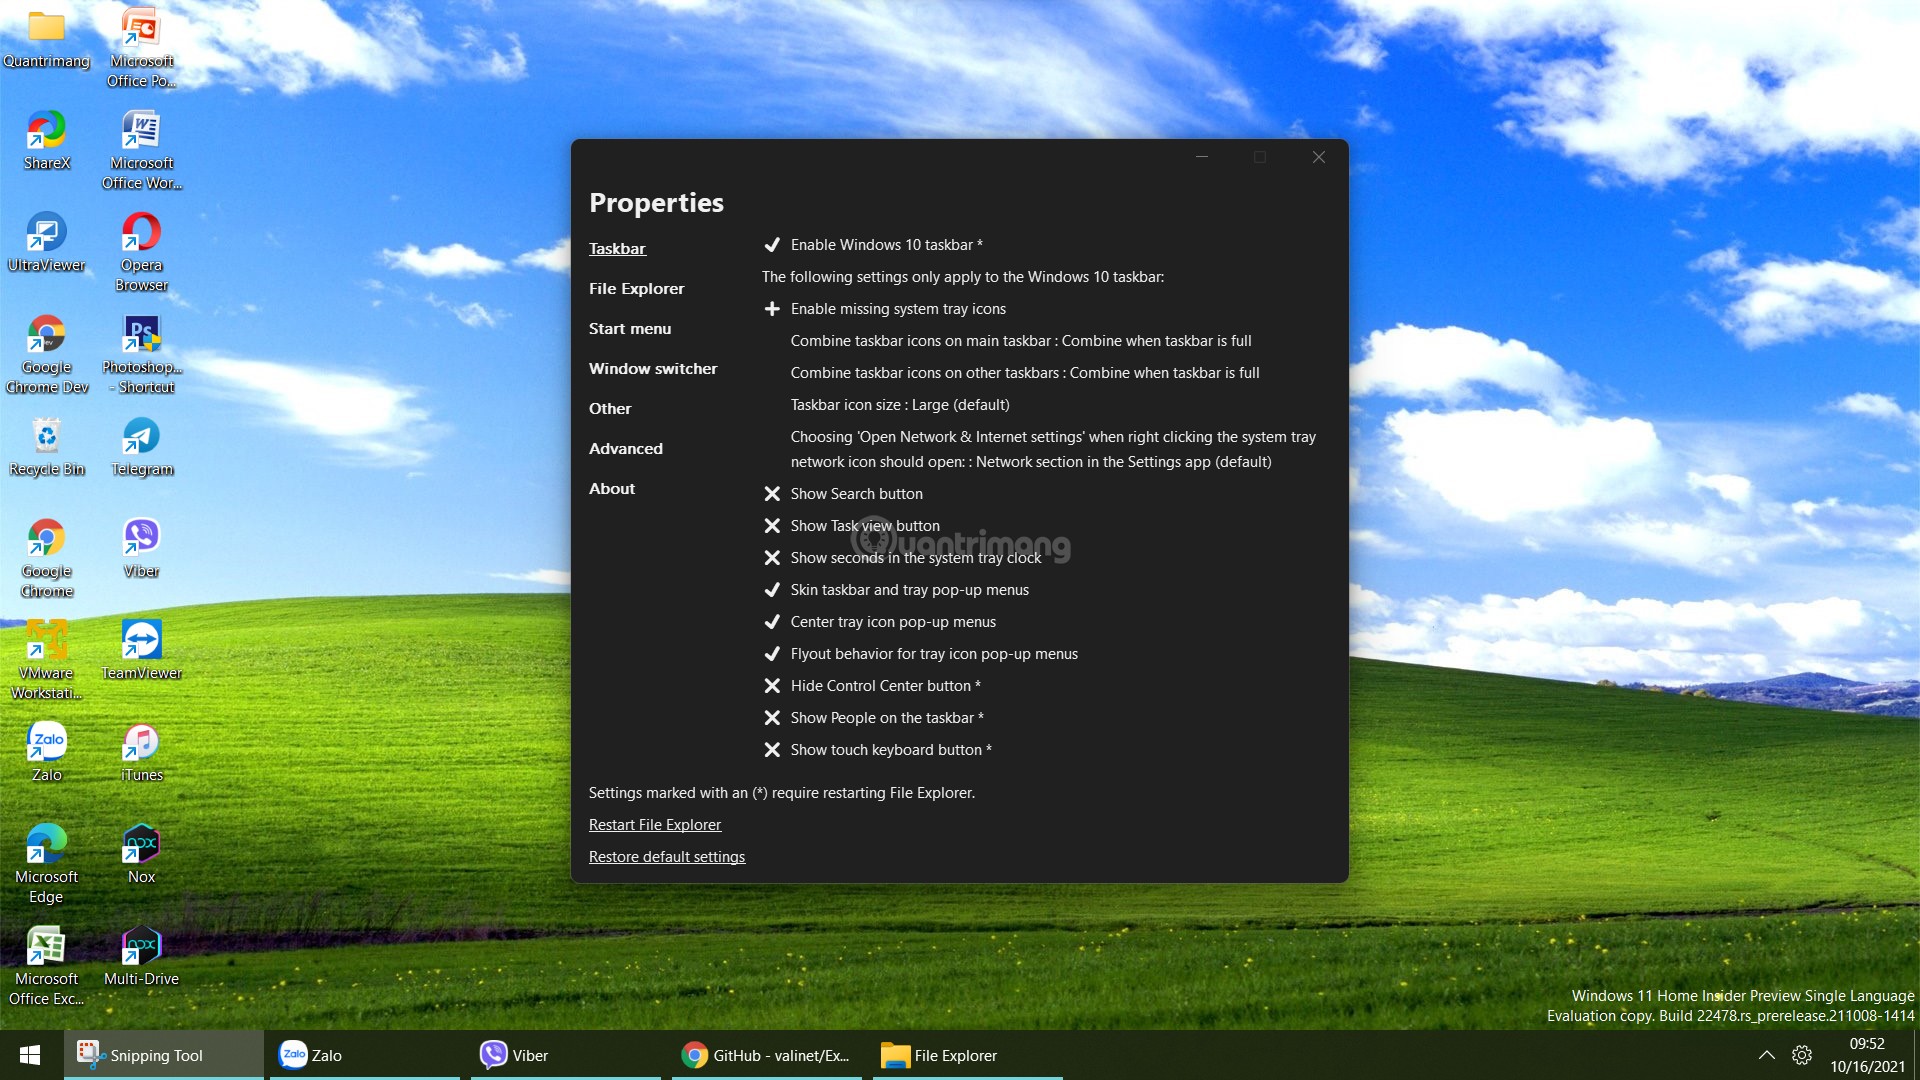 Microsoft xác nhận lỗi máy in mới trên Windows 11, chỉ Admin mới có thể in